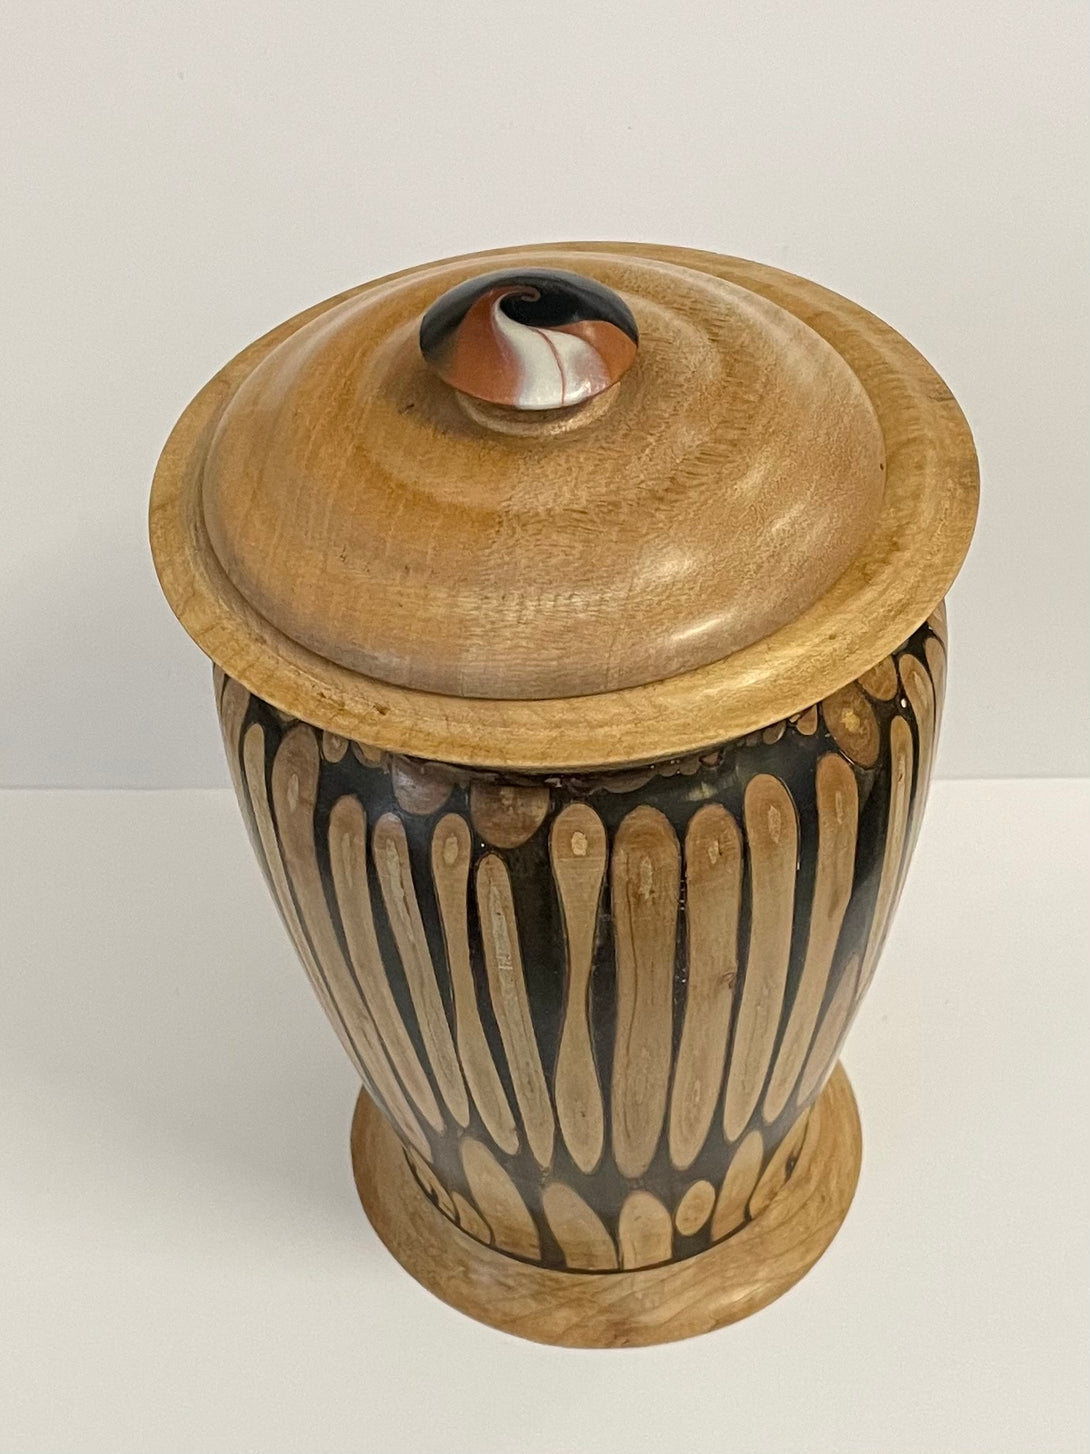 Gordon Grenon - Wood - Lidded Urn made of Resin & Japanese Plum - 4.5